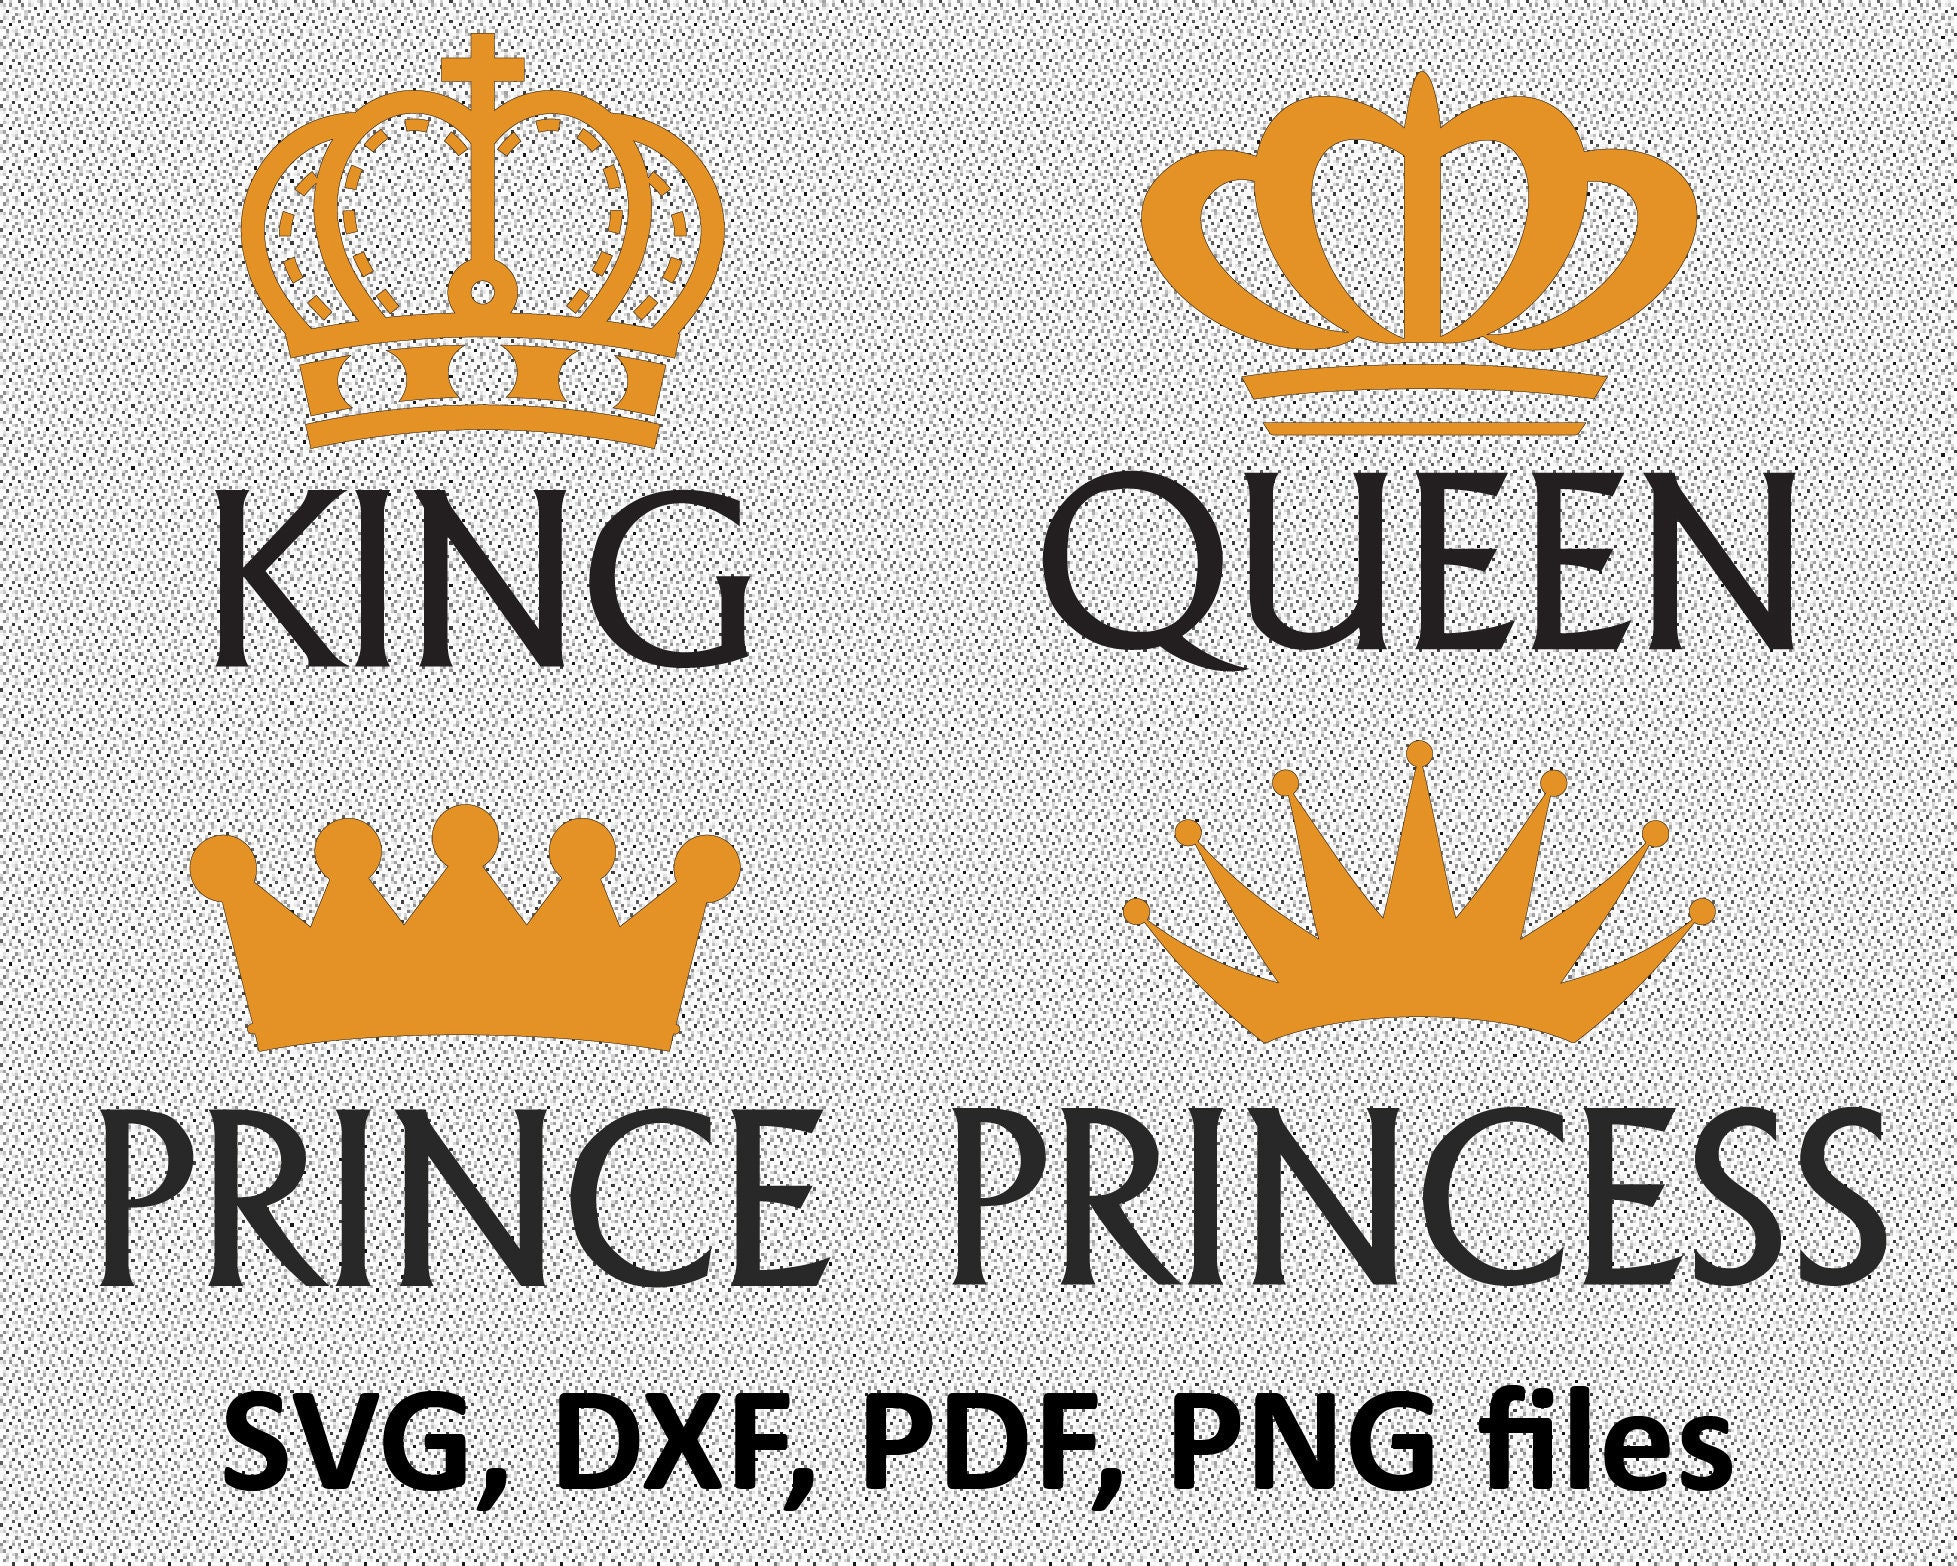 Download King Queen Prince Princess T shirts. Royal Family Shirt | Etsy